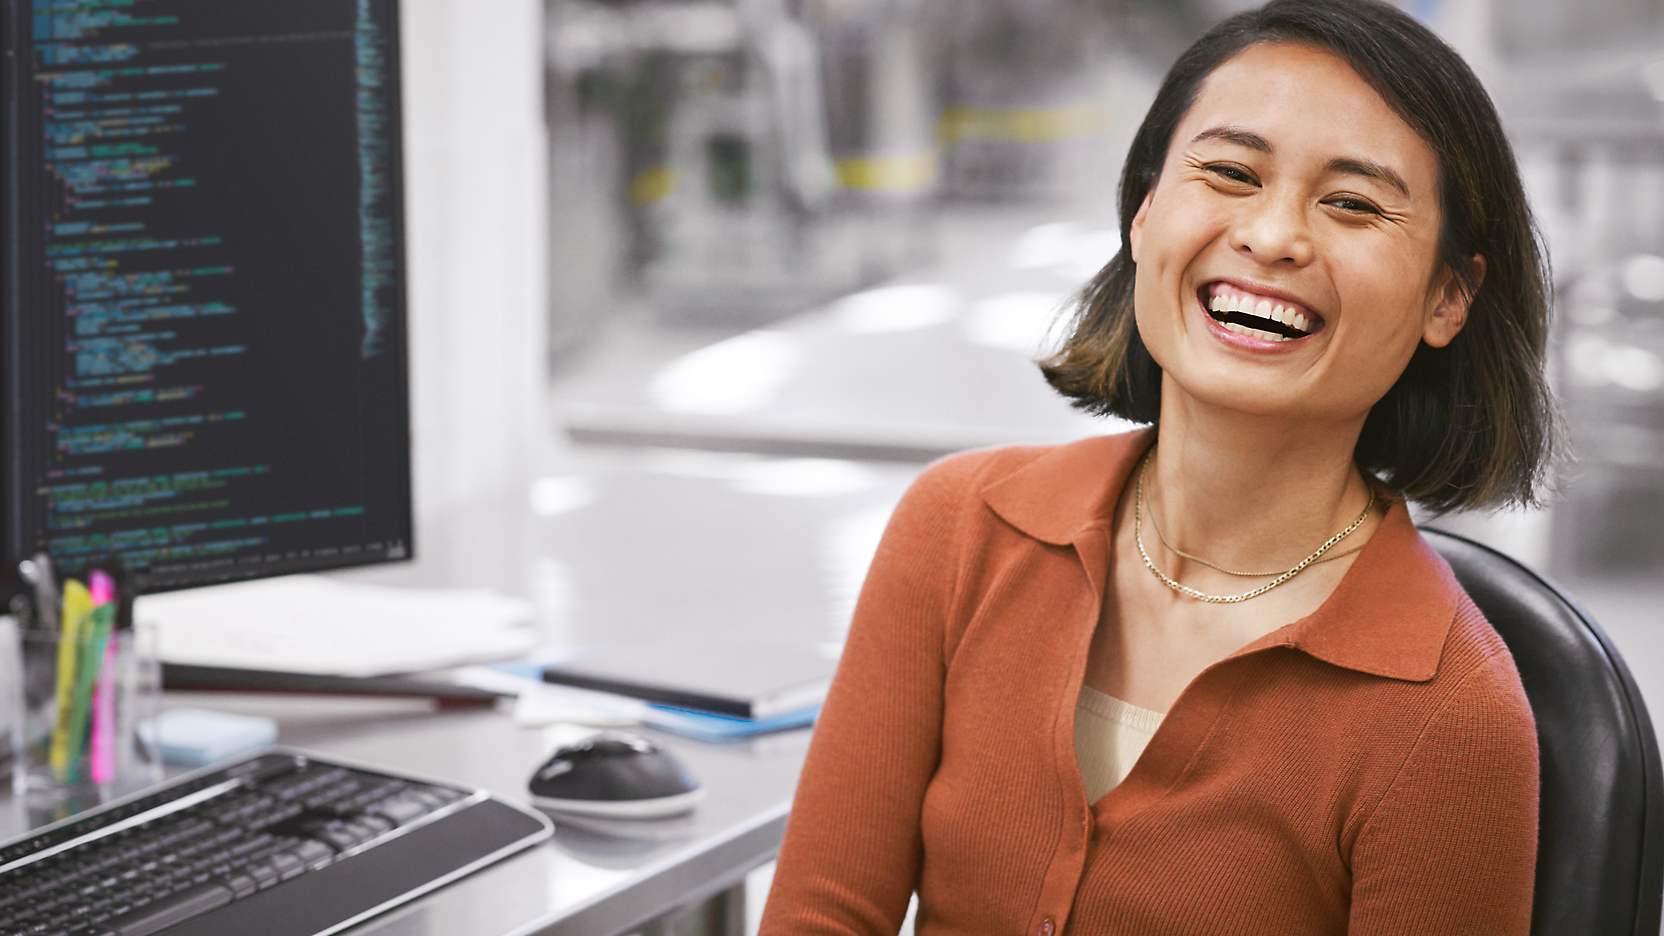 Une femme joyeuse assise à un bureau avec un ordinateur, affichant un code sur l'écran, dans un bureau moderne.